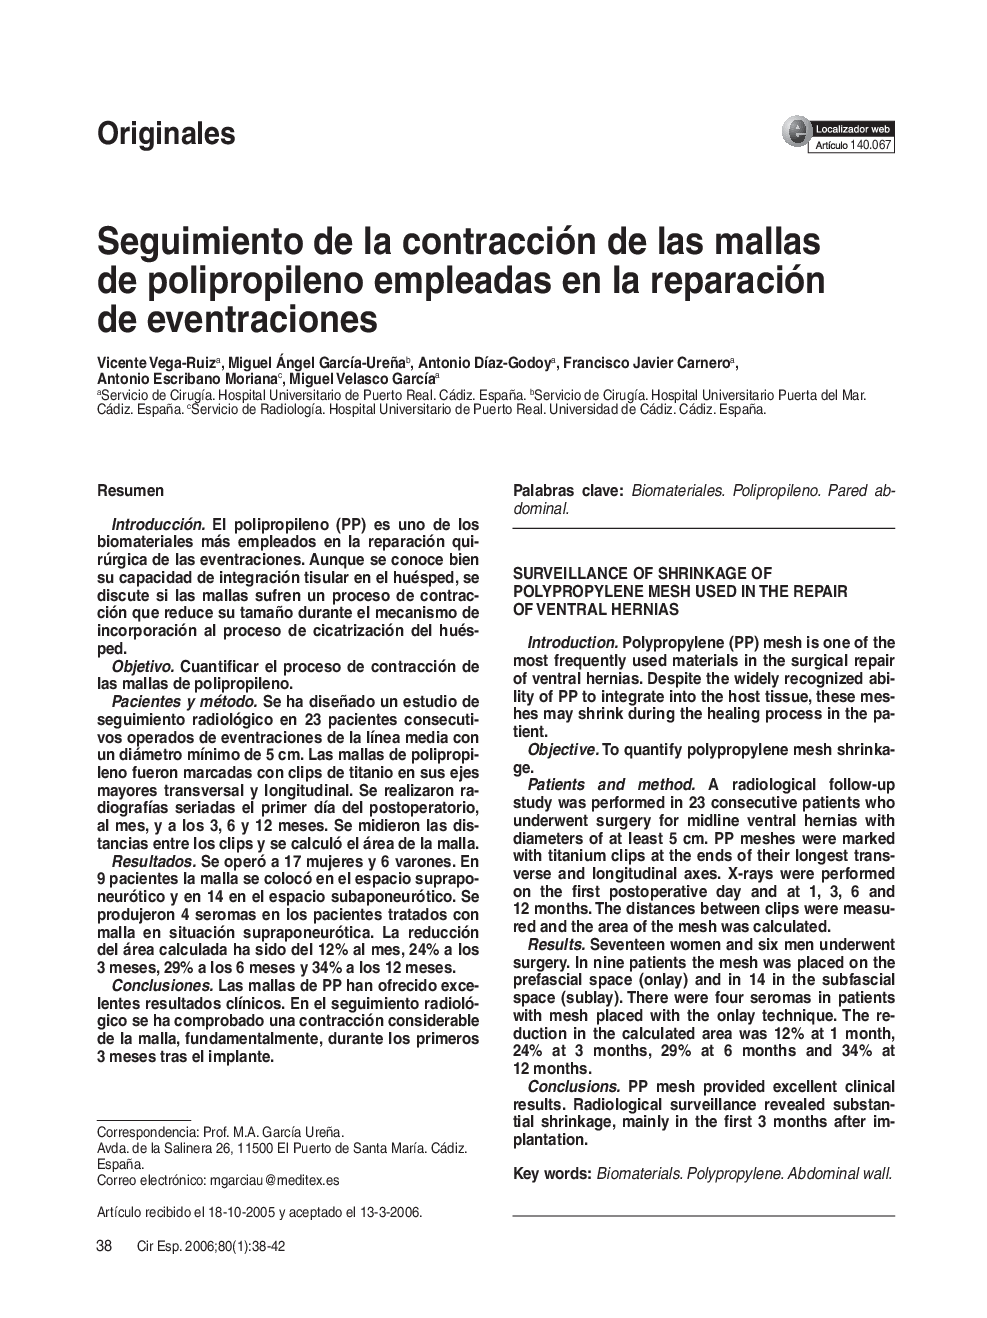 Seguimiento de la contracción de las mallas de polipropileno empleadas en la reparación de eventraciones